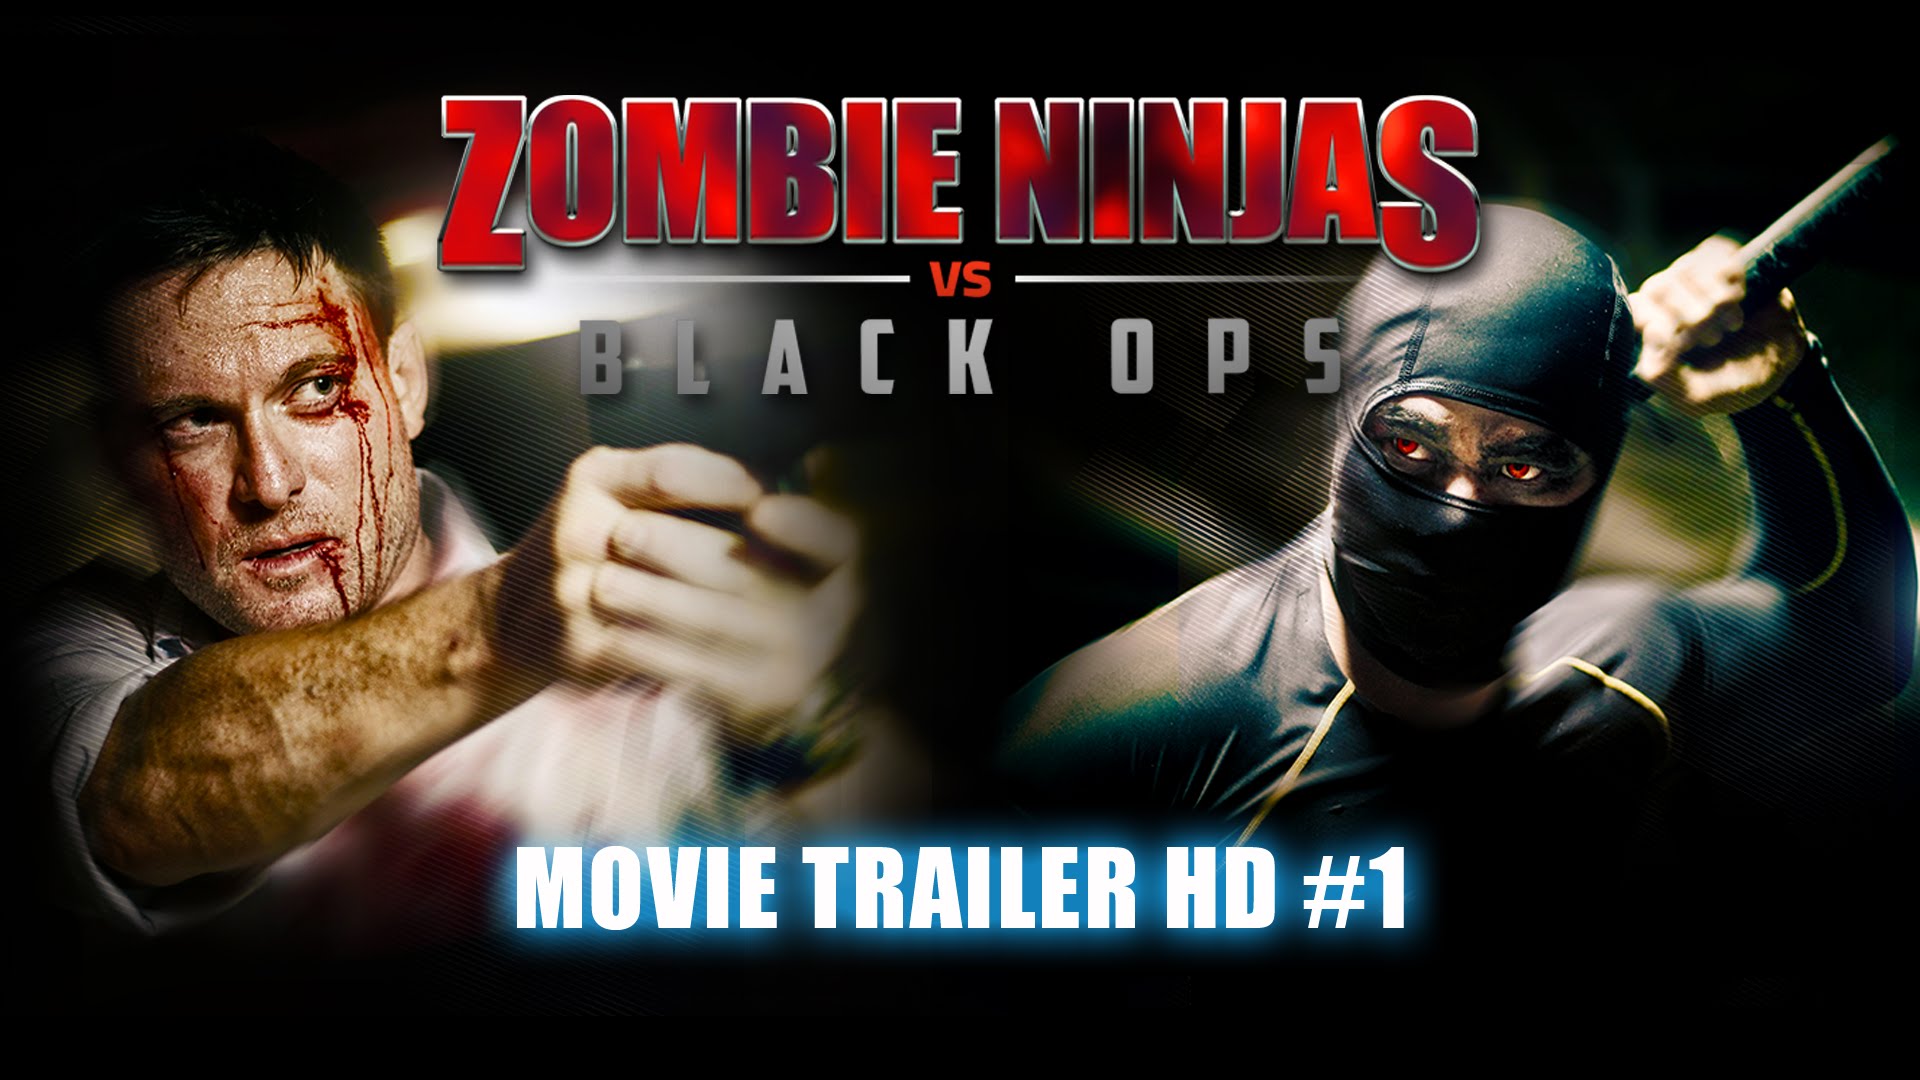 Zombie Ninjas Vs Black Ops Backgrounds on Wallpapers Vista